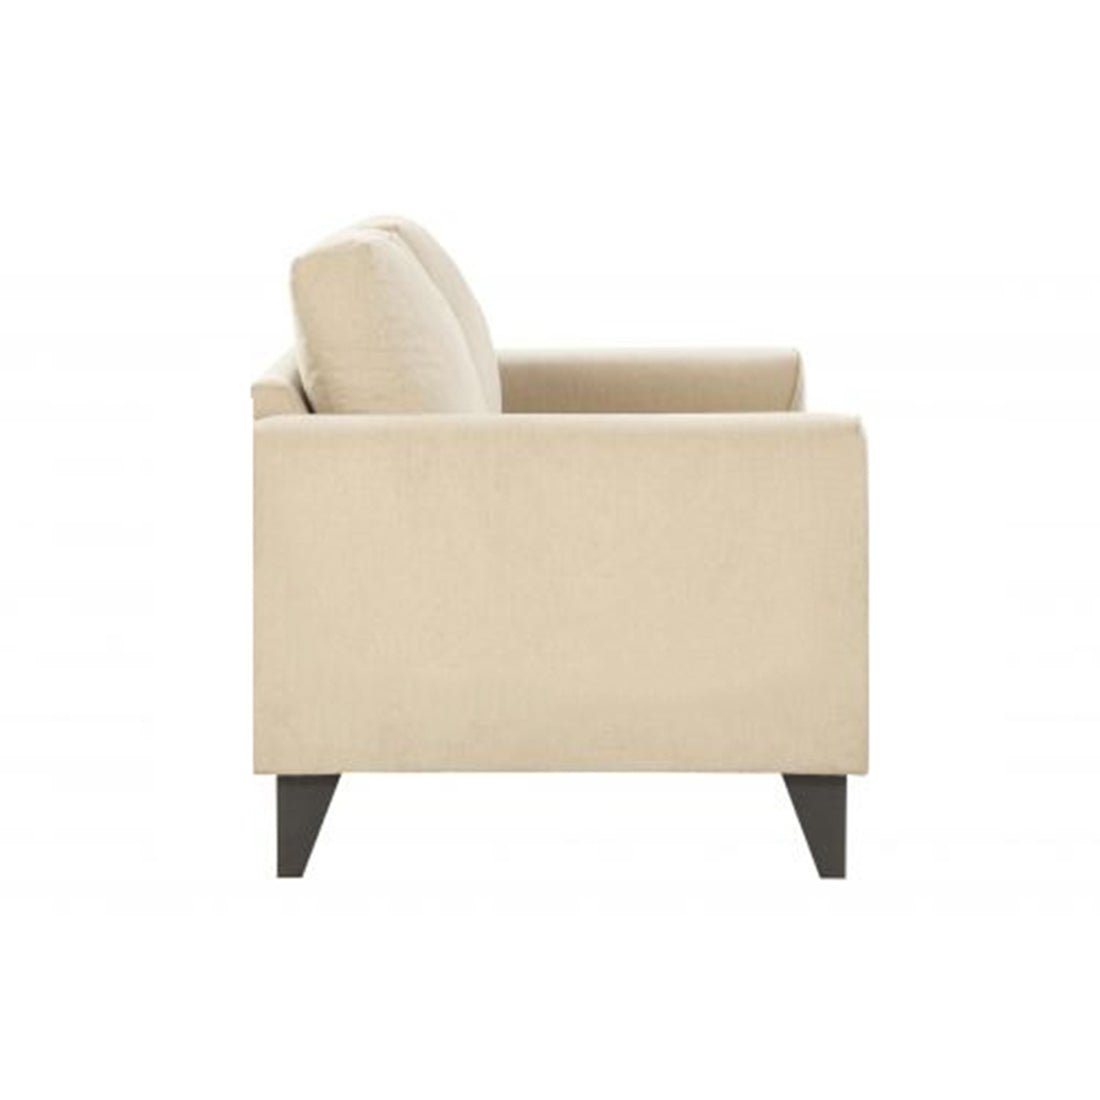 Pelican 2 Seater Fabric Sofa For Living Room - Beige - Torque India